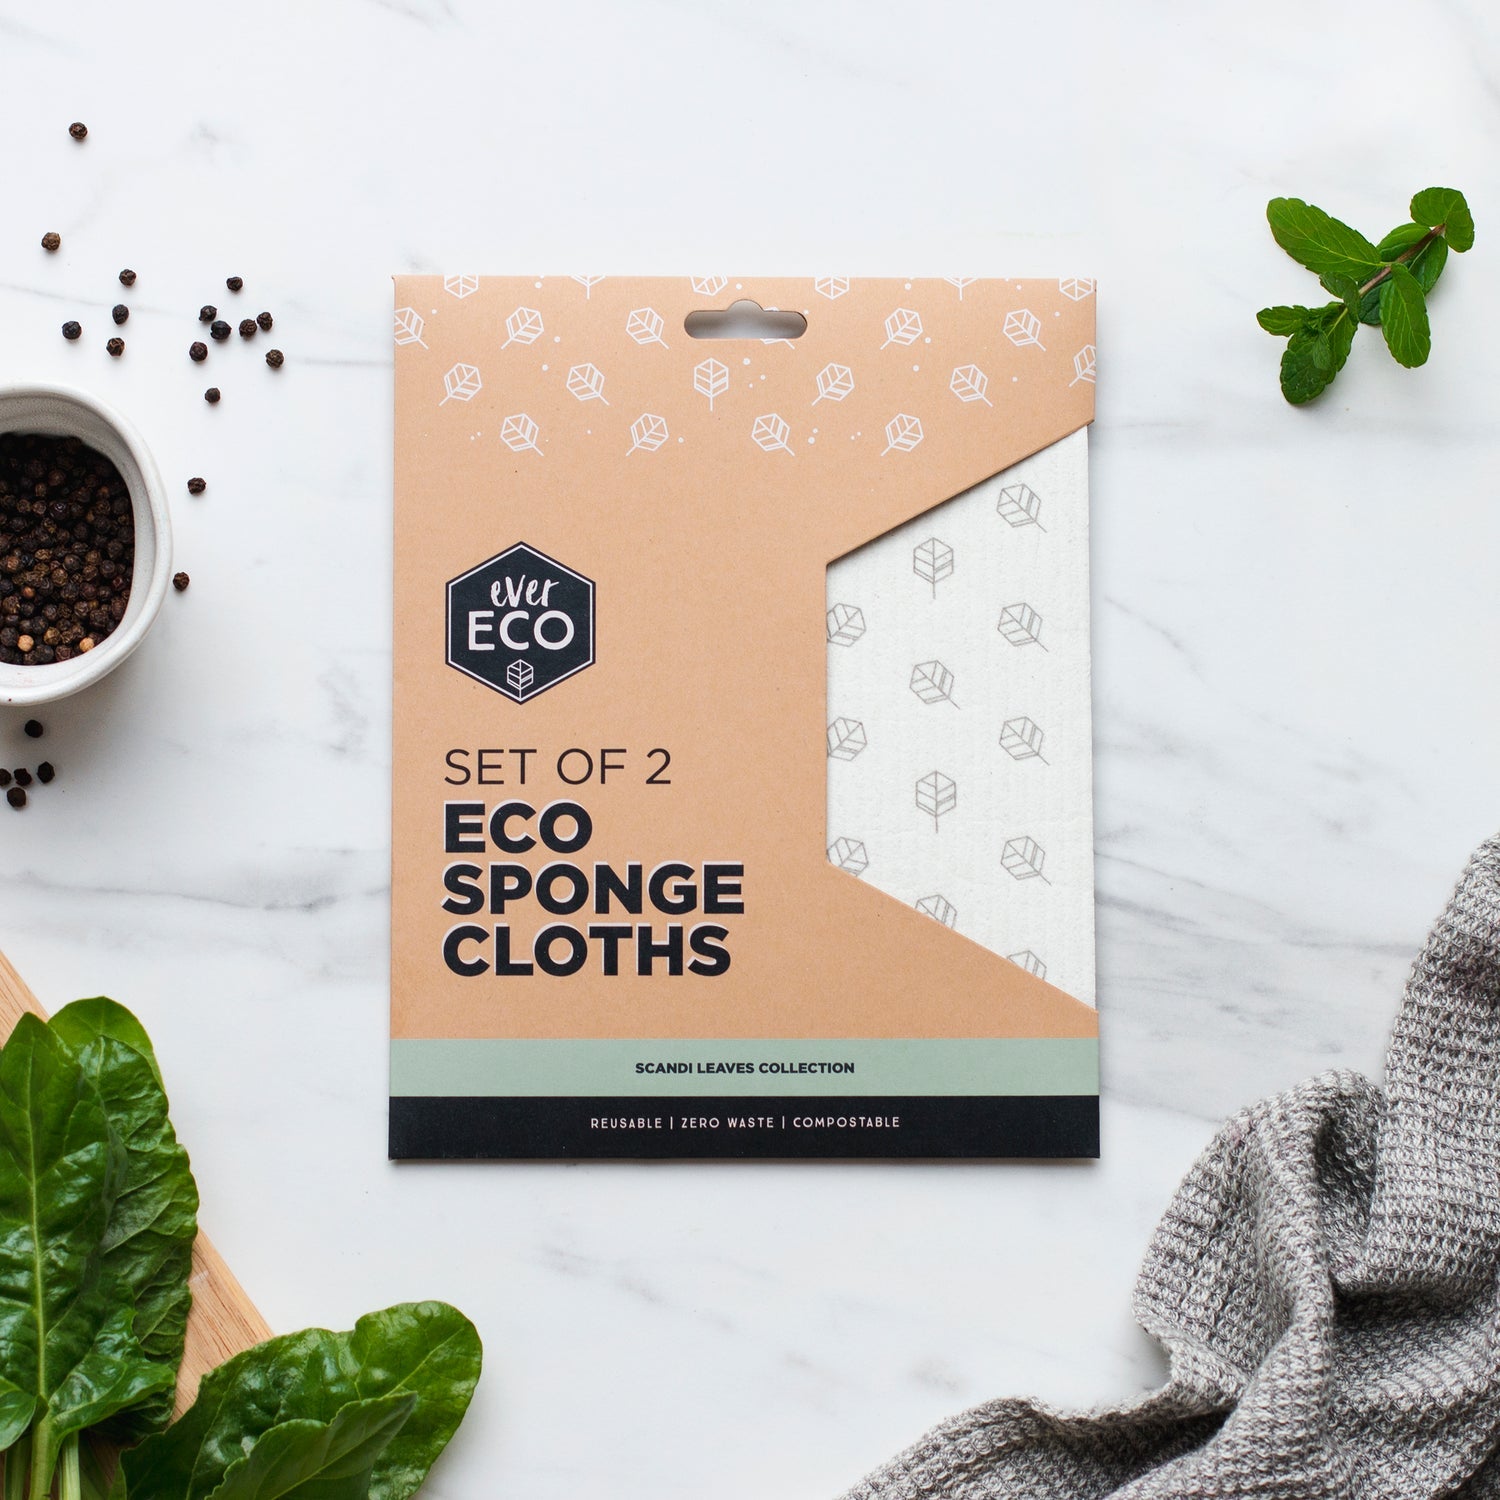 Ever Eco Eco Sponge Cloths 2pk-The Living Co.